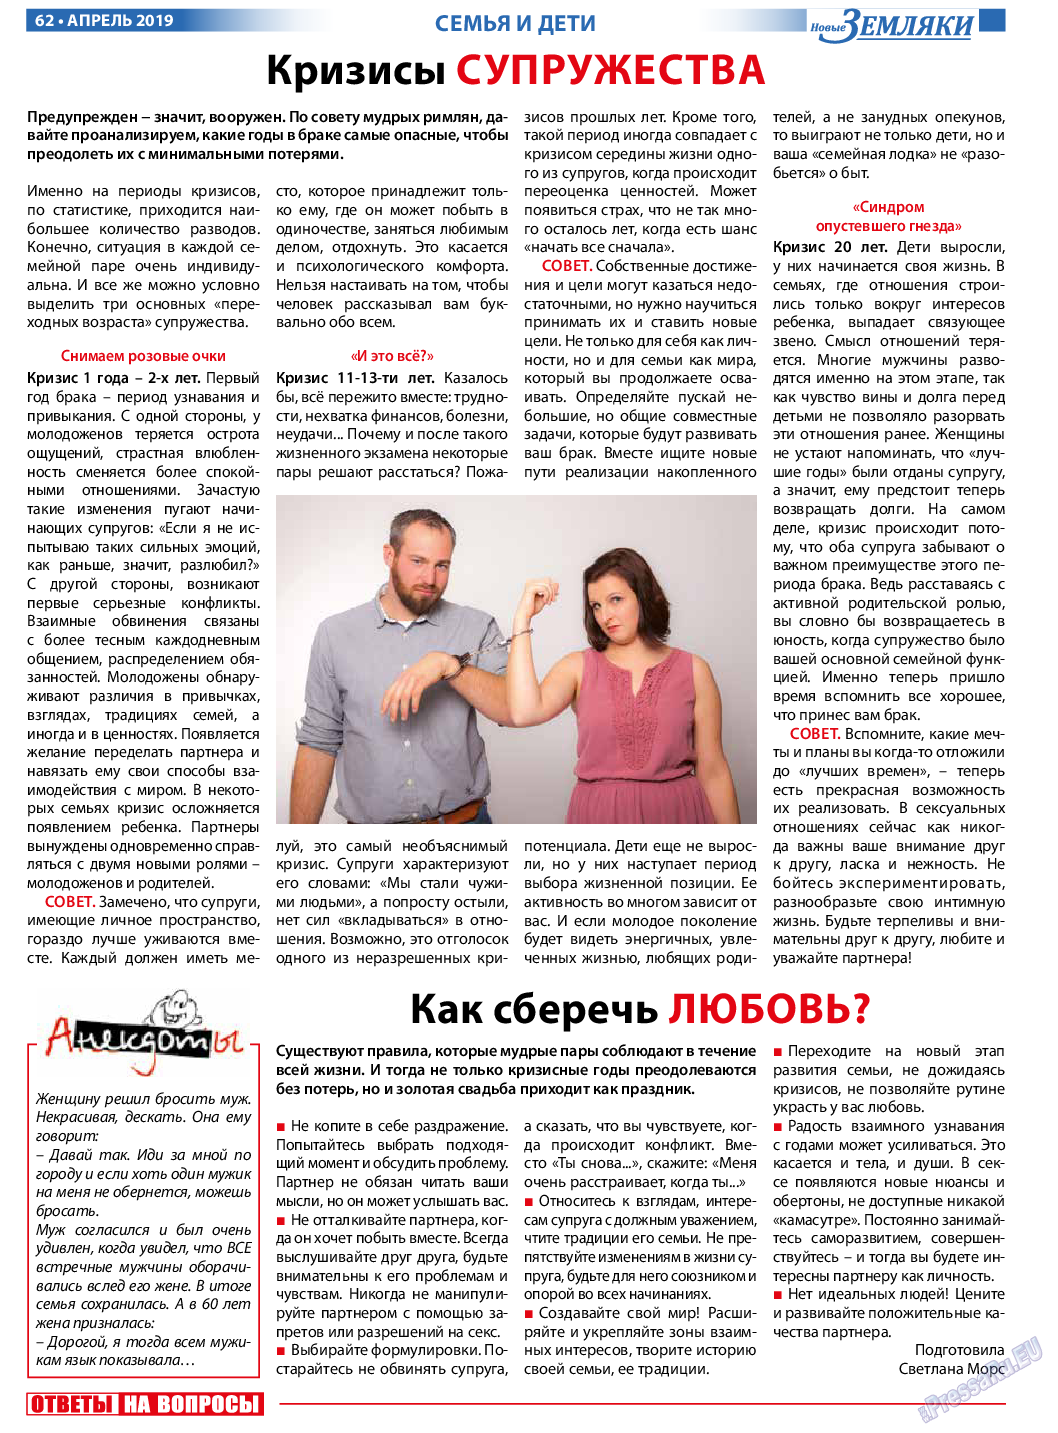 Новые Земляки, газета. 2019 №4 стр.62